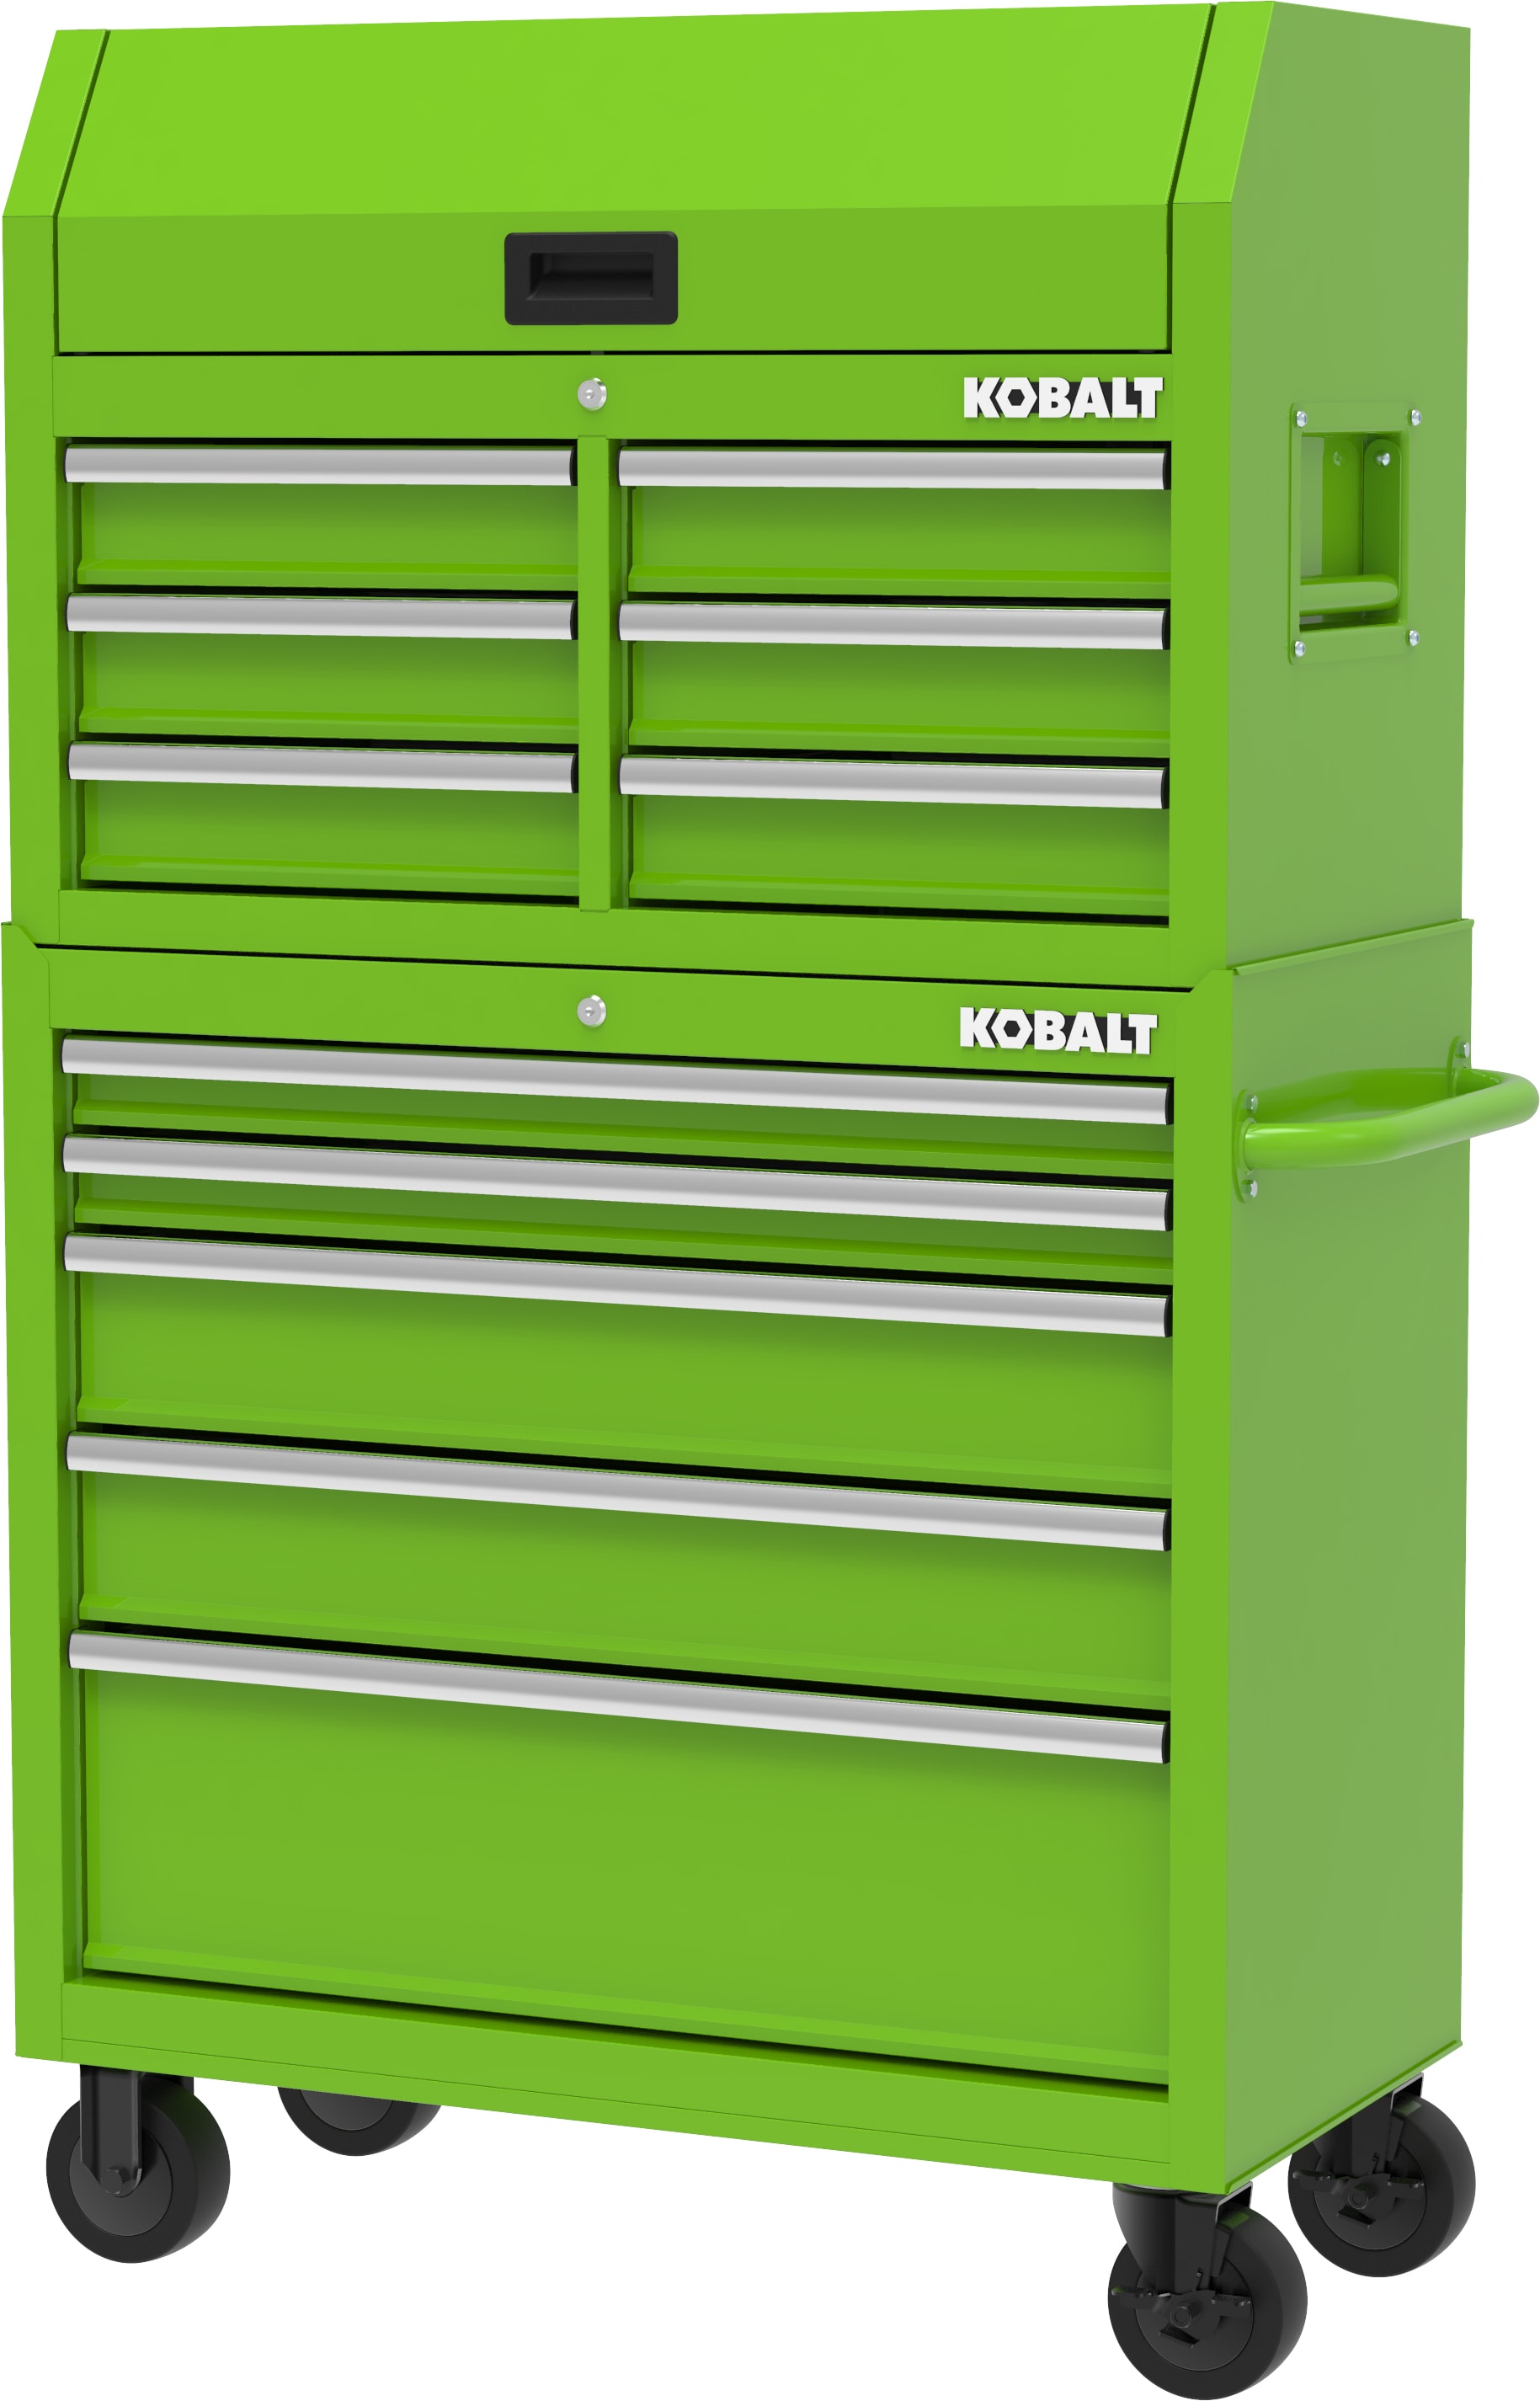 Kobalt 36-in W x 37.8-in H 5-Drawer Steel Rolling Tool Cabinet